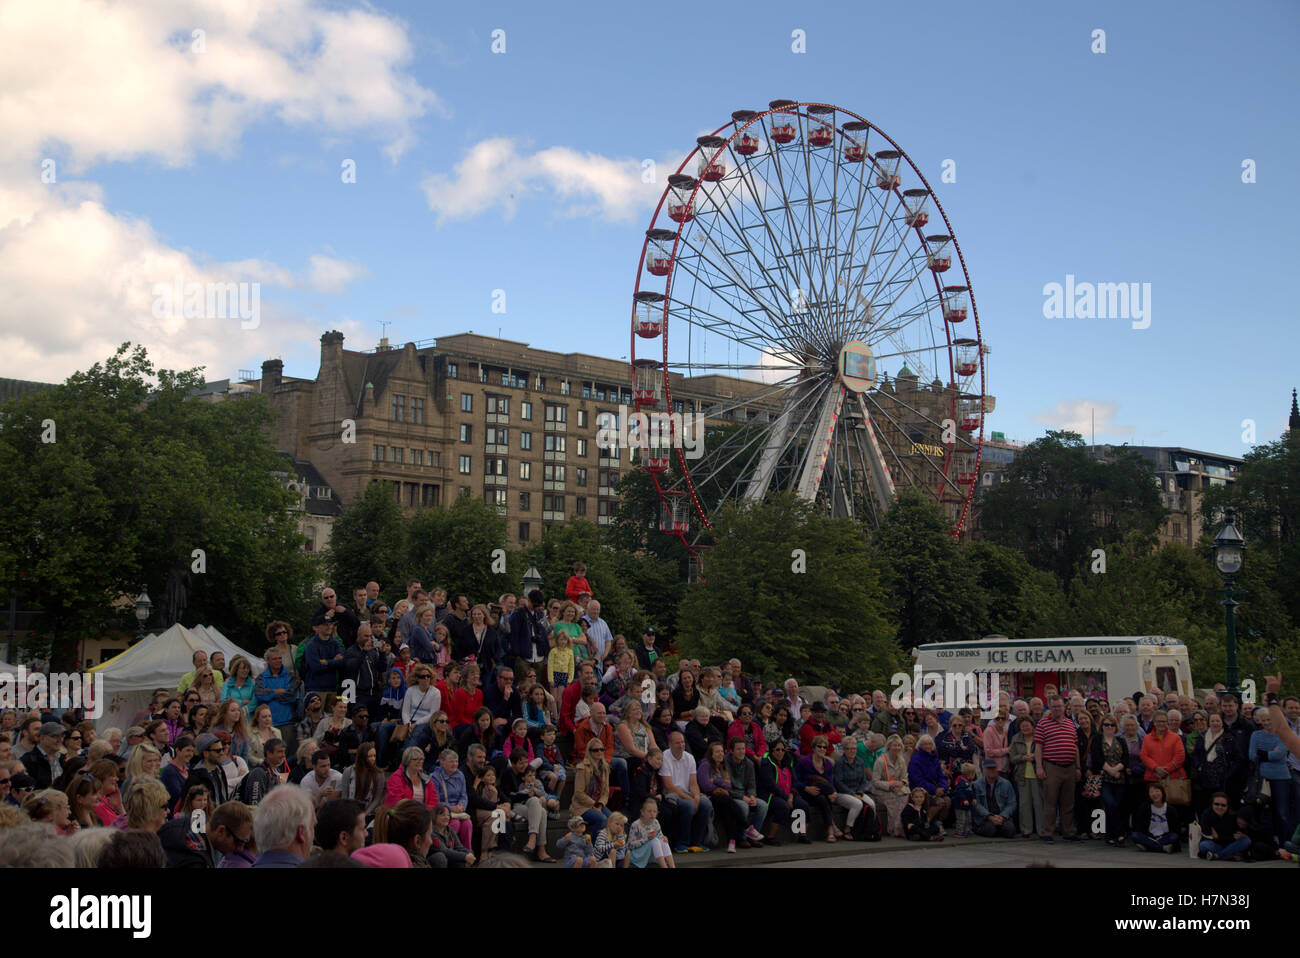 Des scènes de l'Edinburgh Festival Fringe festival de rue 2015 parrainé vierge Edinburgh, Ecosse, Royaume-Uni Banque D'Images